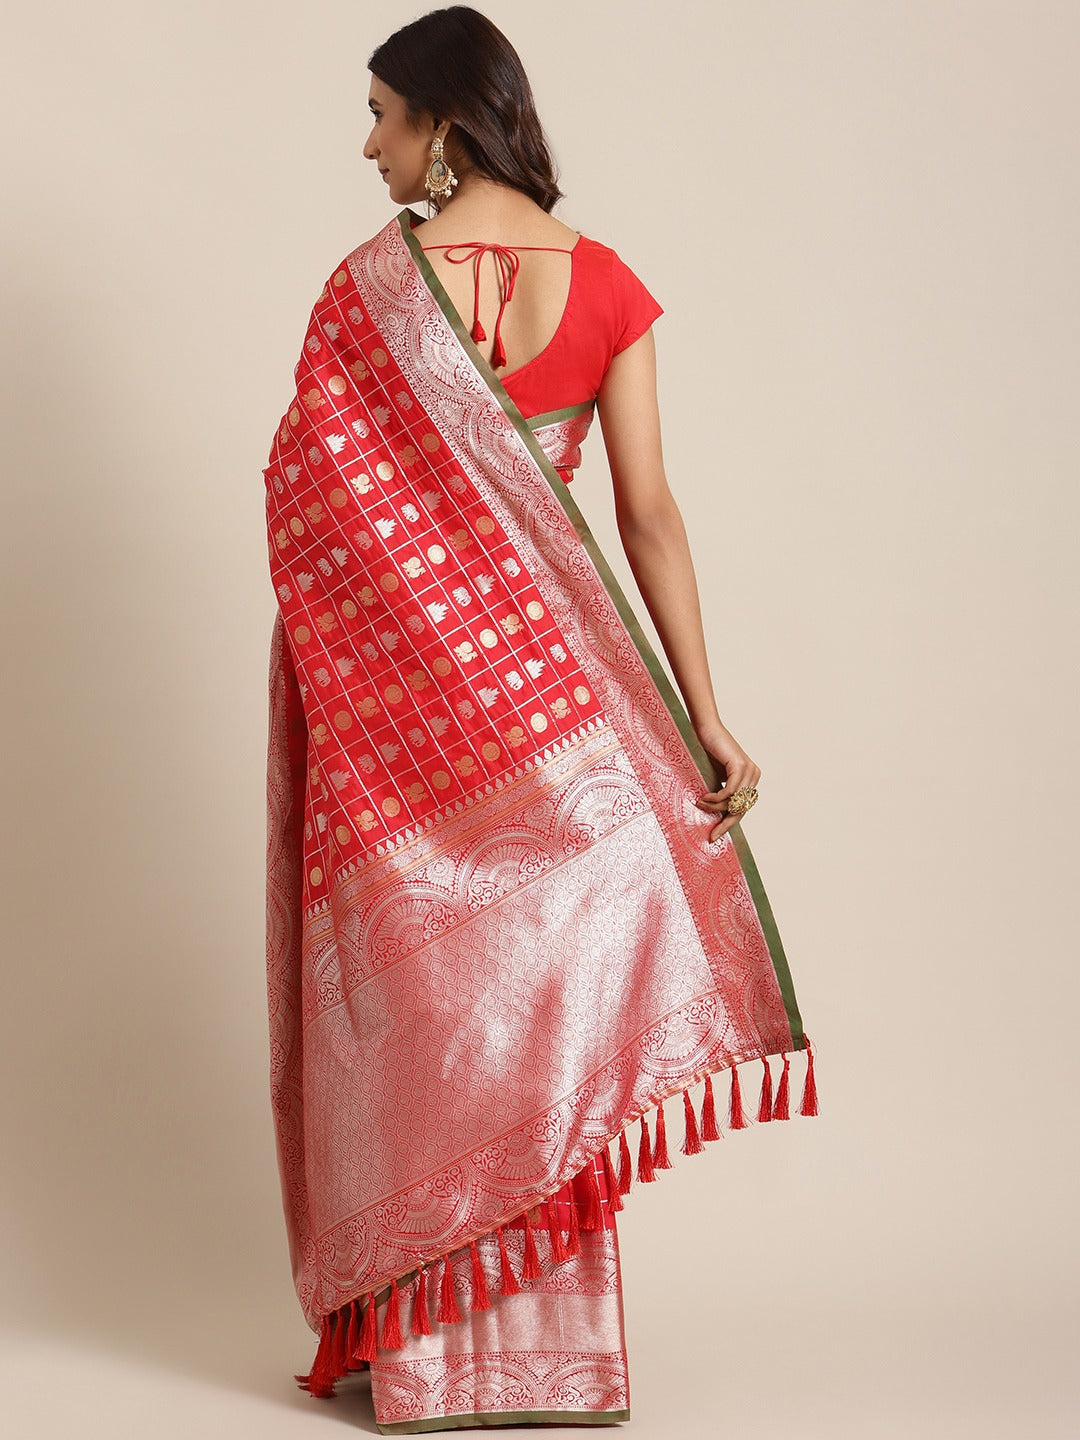  Exclusive Red Colour Woven Design Banarasi Saree